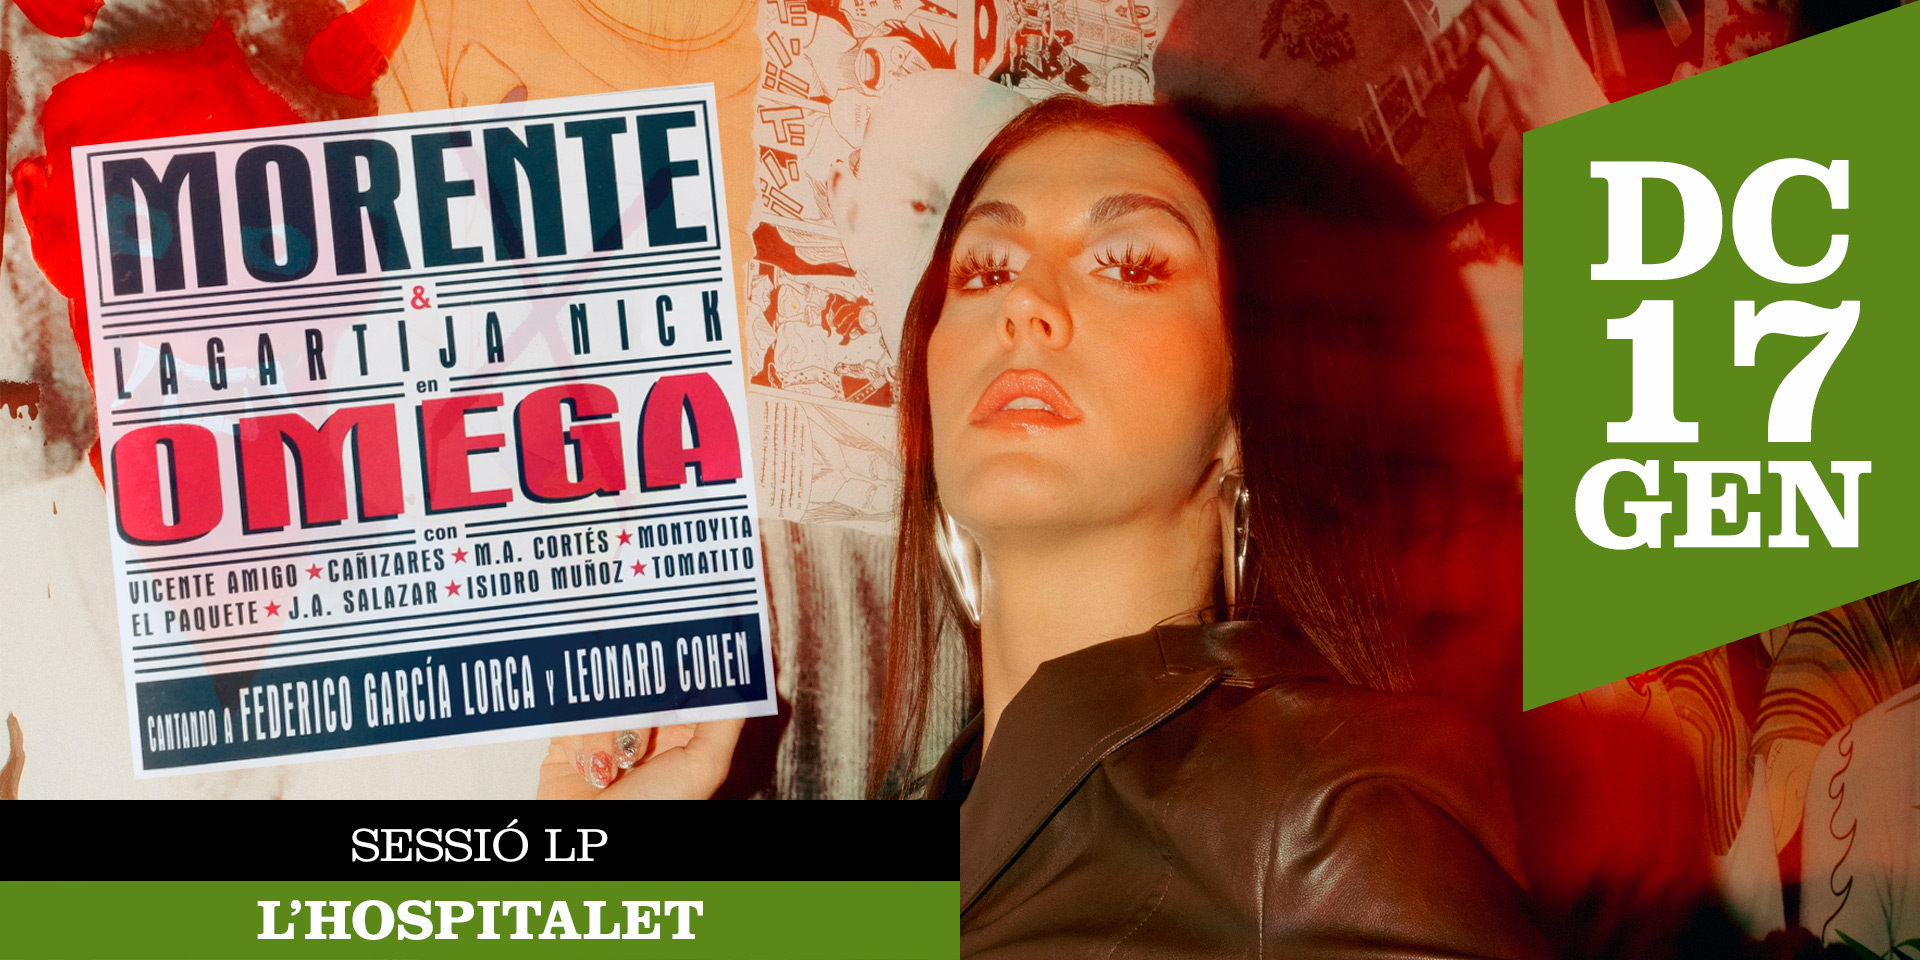 SESSIÓ LP: Omega (àlbum d'Enrique Morente & Lagartija Nick) amb Queralt Lahoz